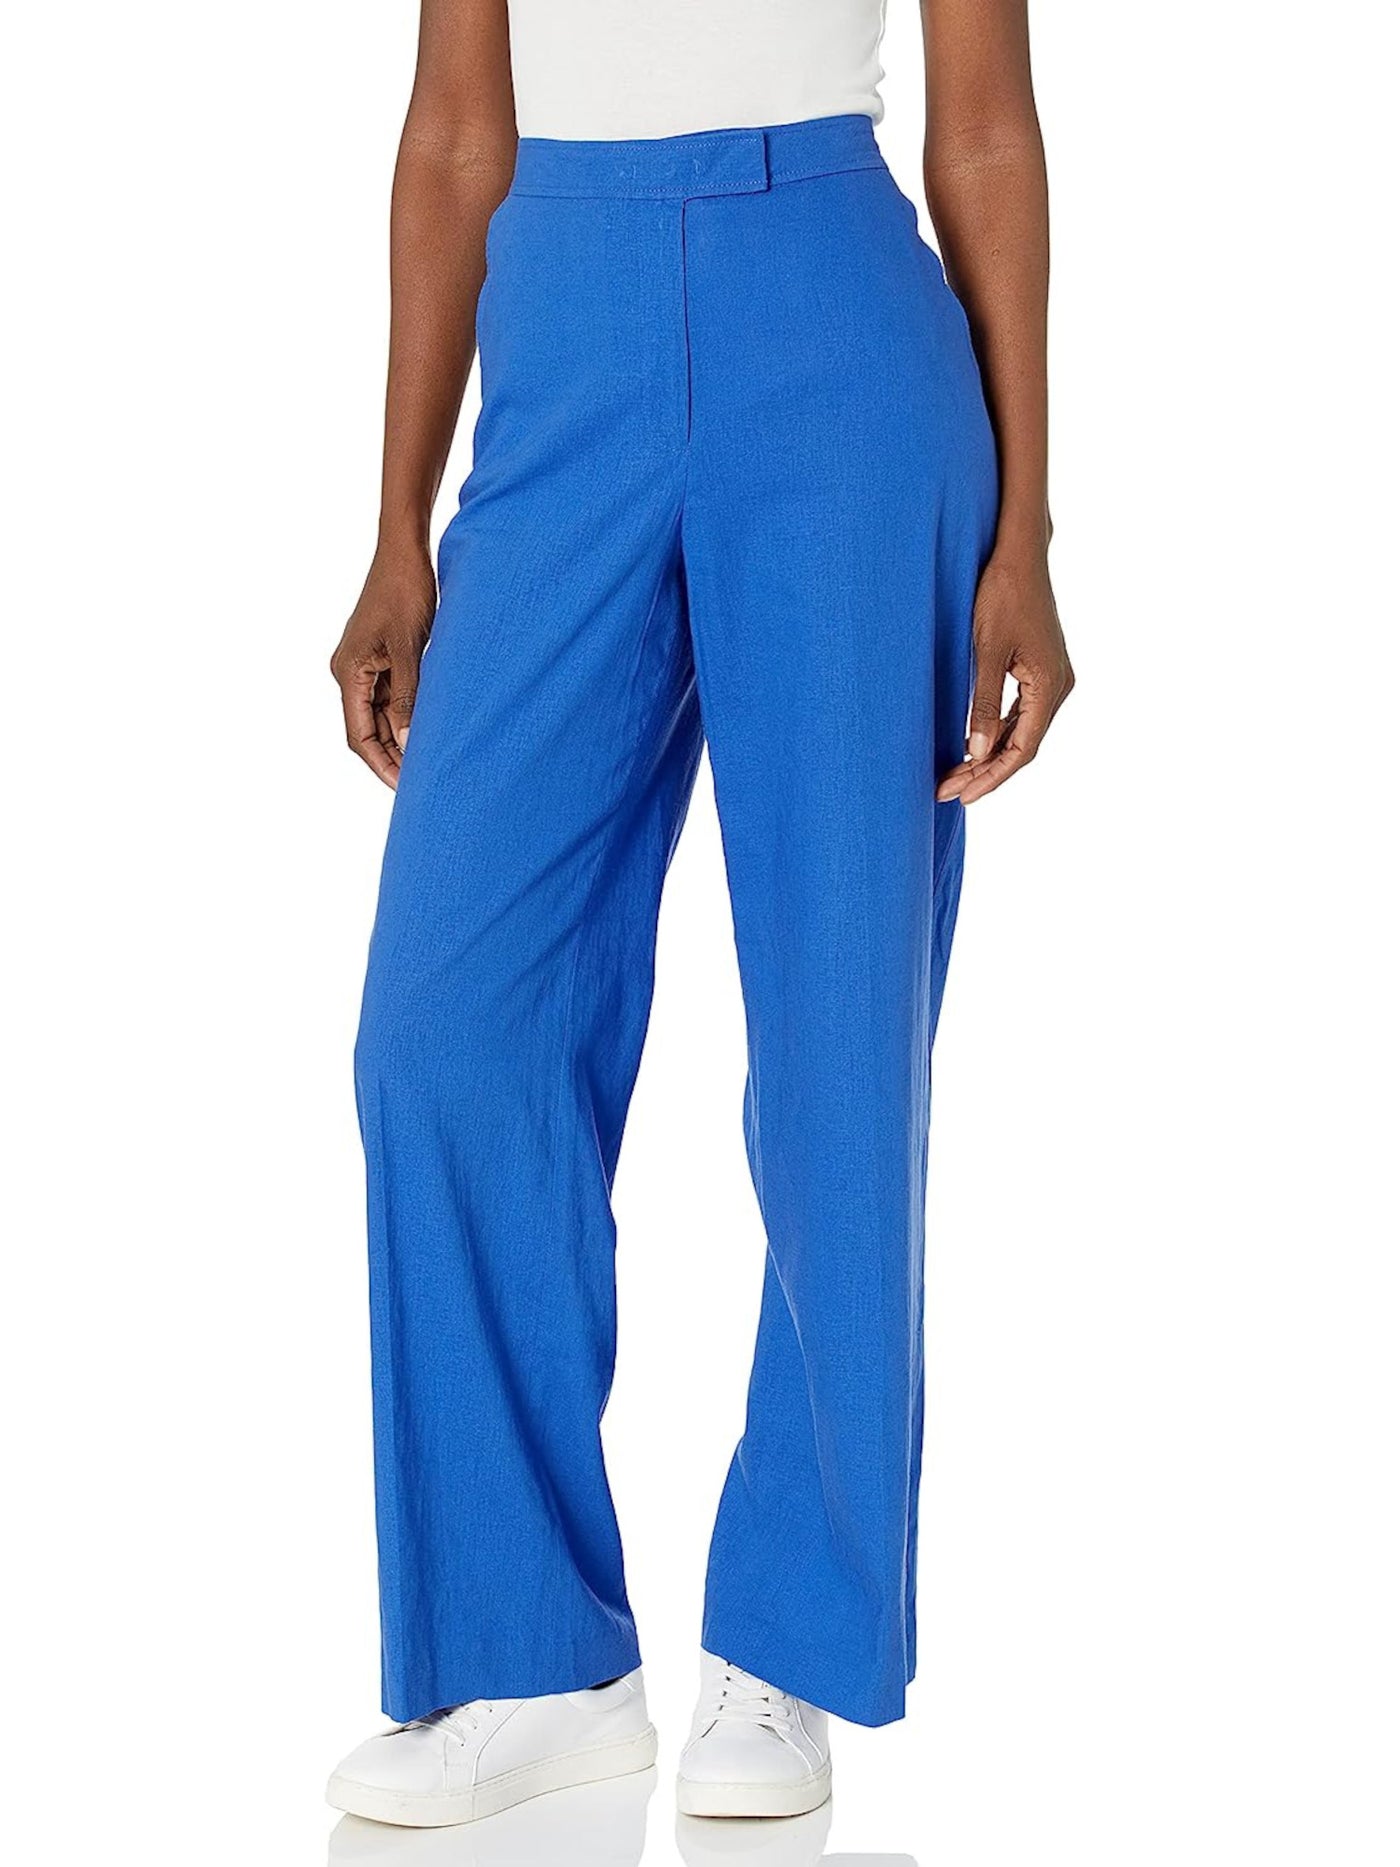 ANNE KLEIN Womens Blue Zippered Semi Sheer High Waist Pants 10